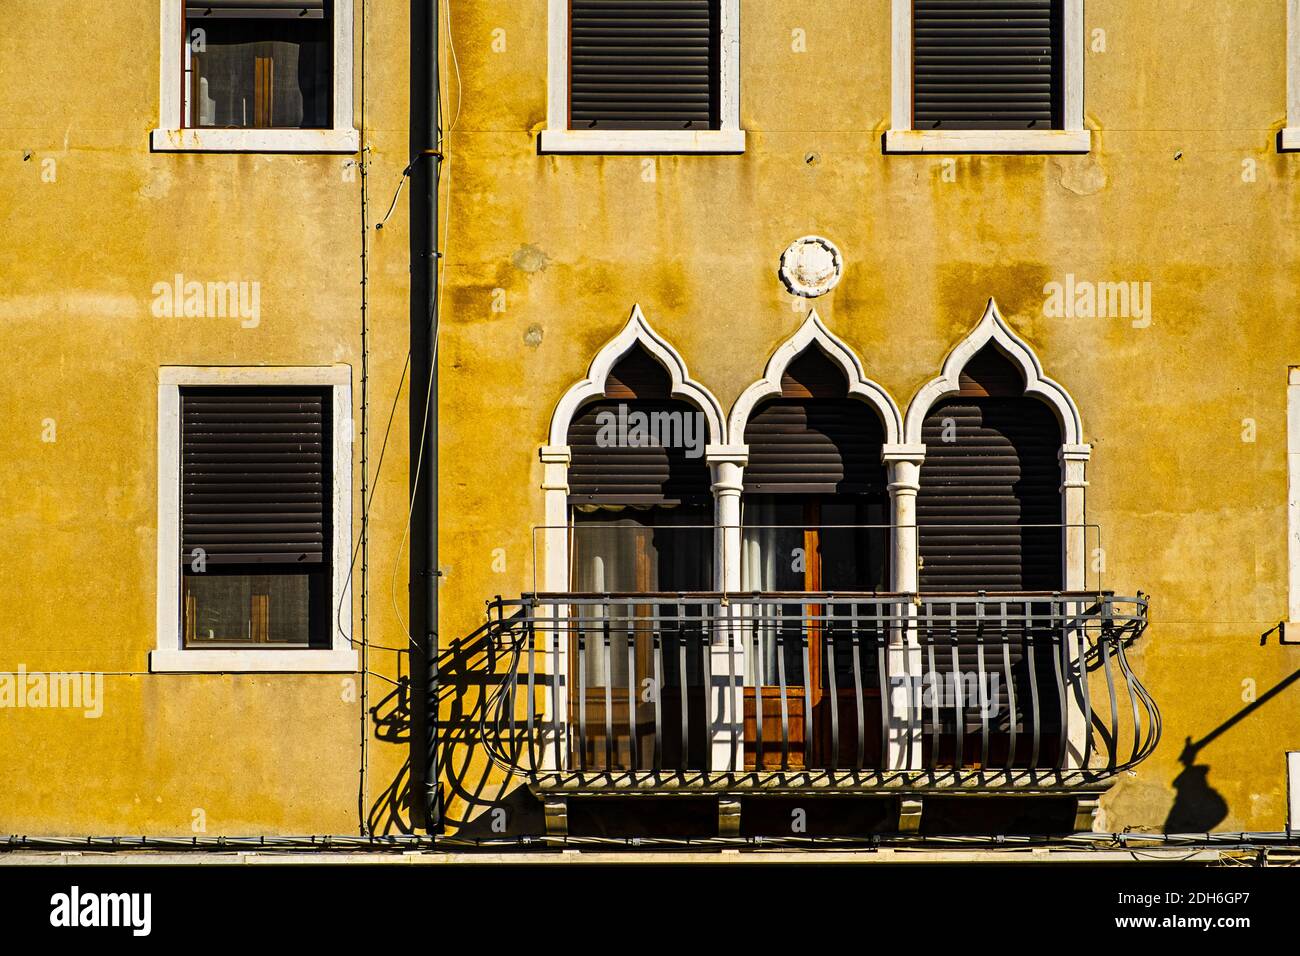 Cultura italiana sulle facciate veneziane. Foto Stock